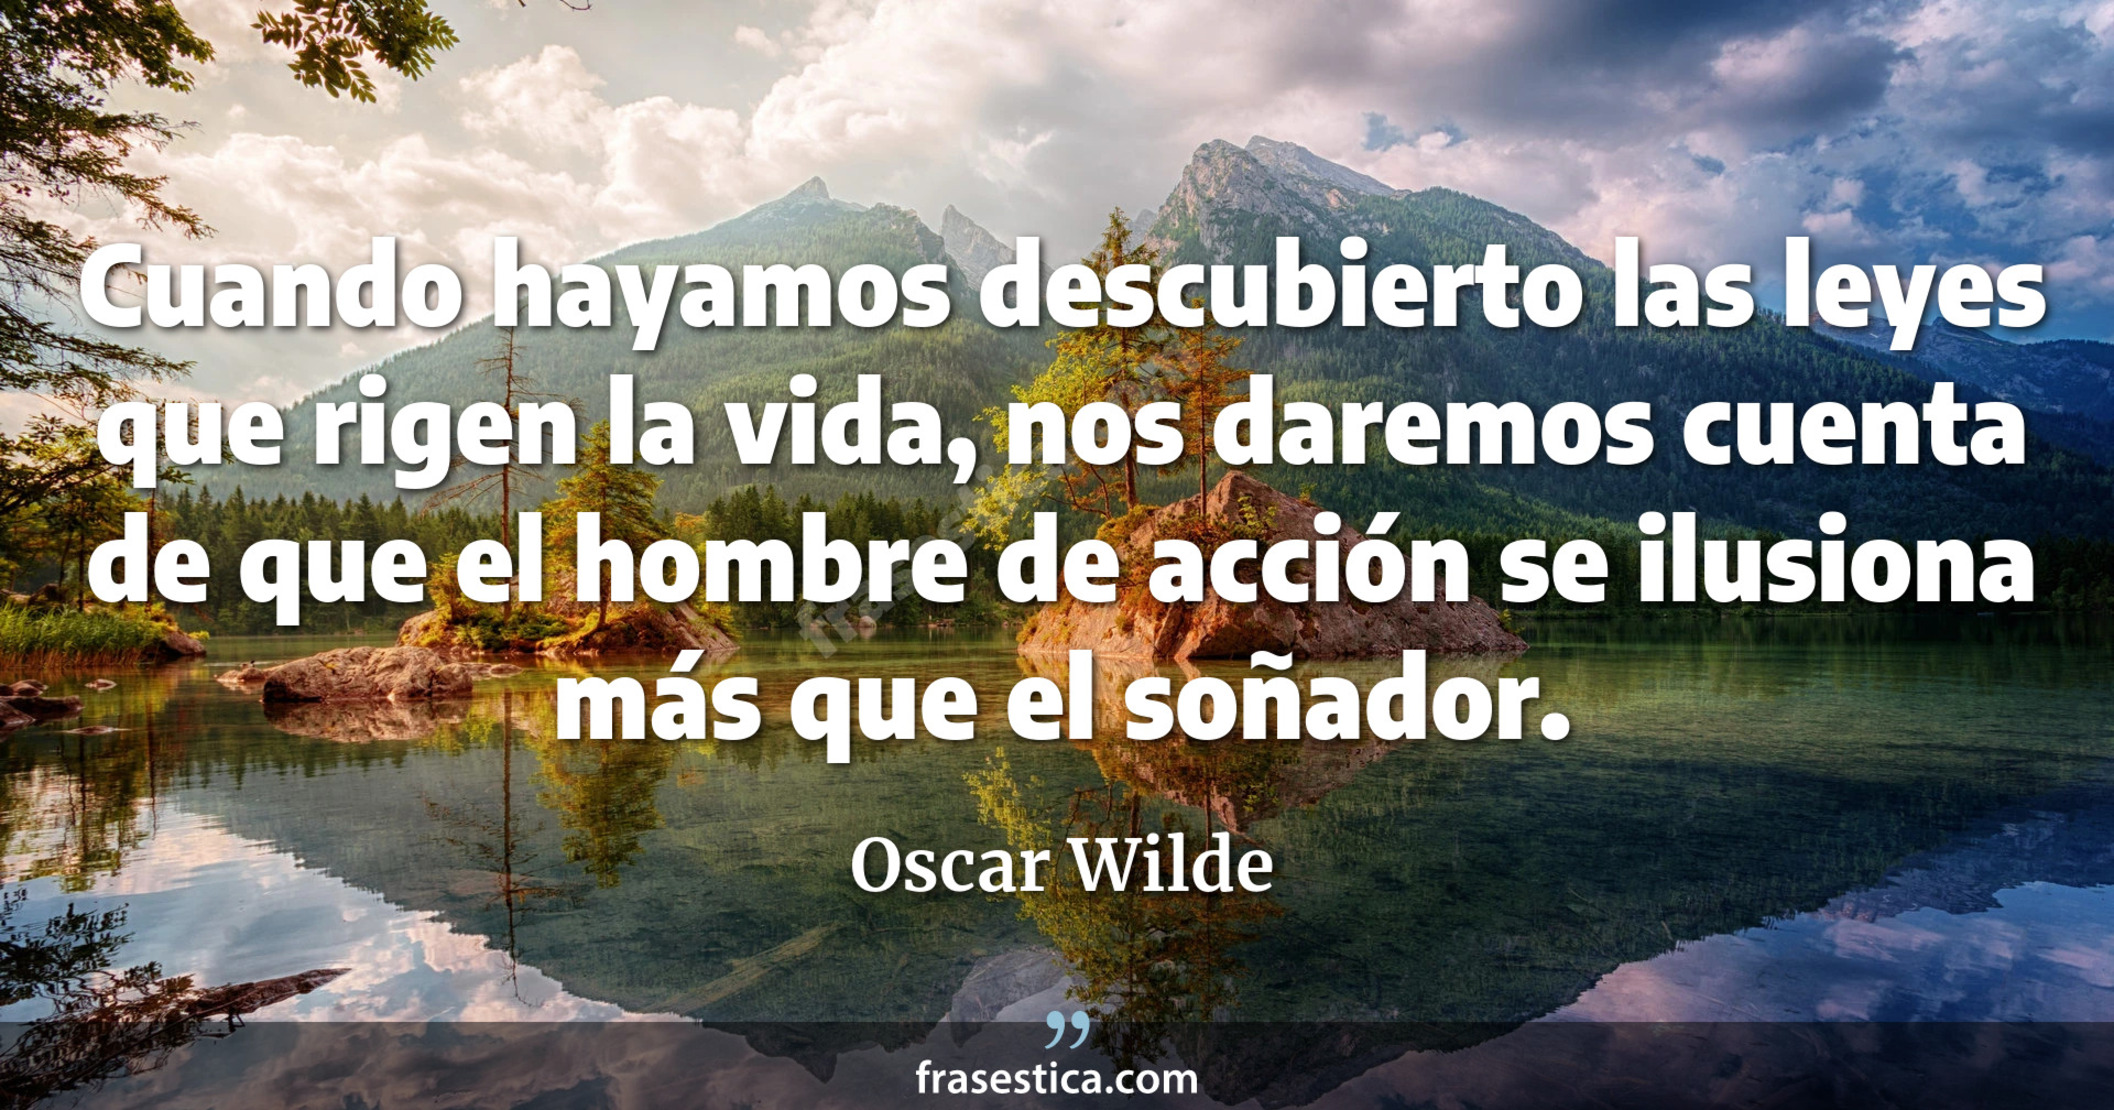 Cuando hayamos descubierto las leyes que rigen la vida, nos daremos cuenta de que el hombre de acción se ilusiona más que el soñador. - Oscar Wilde